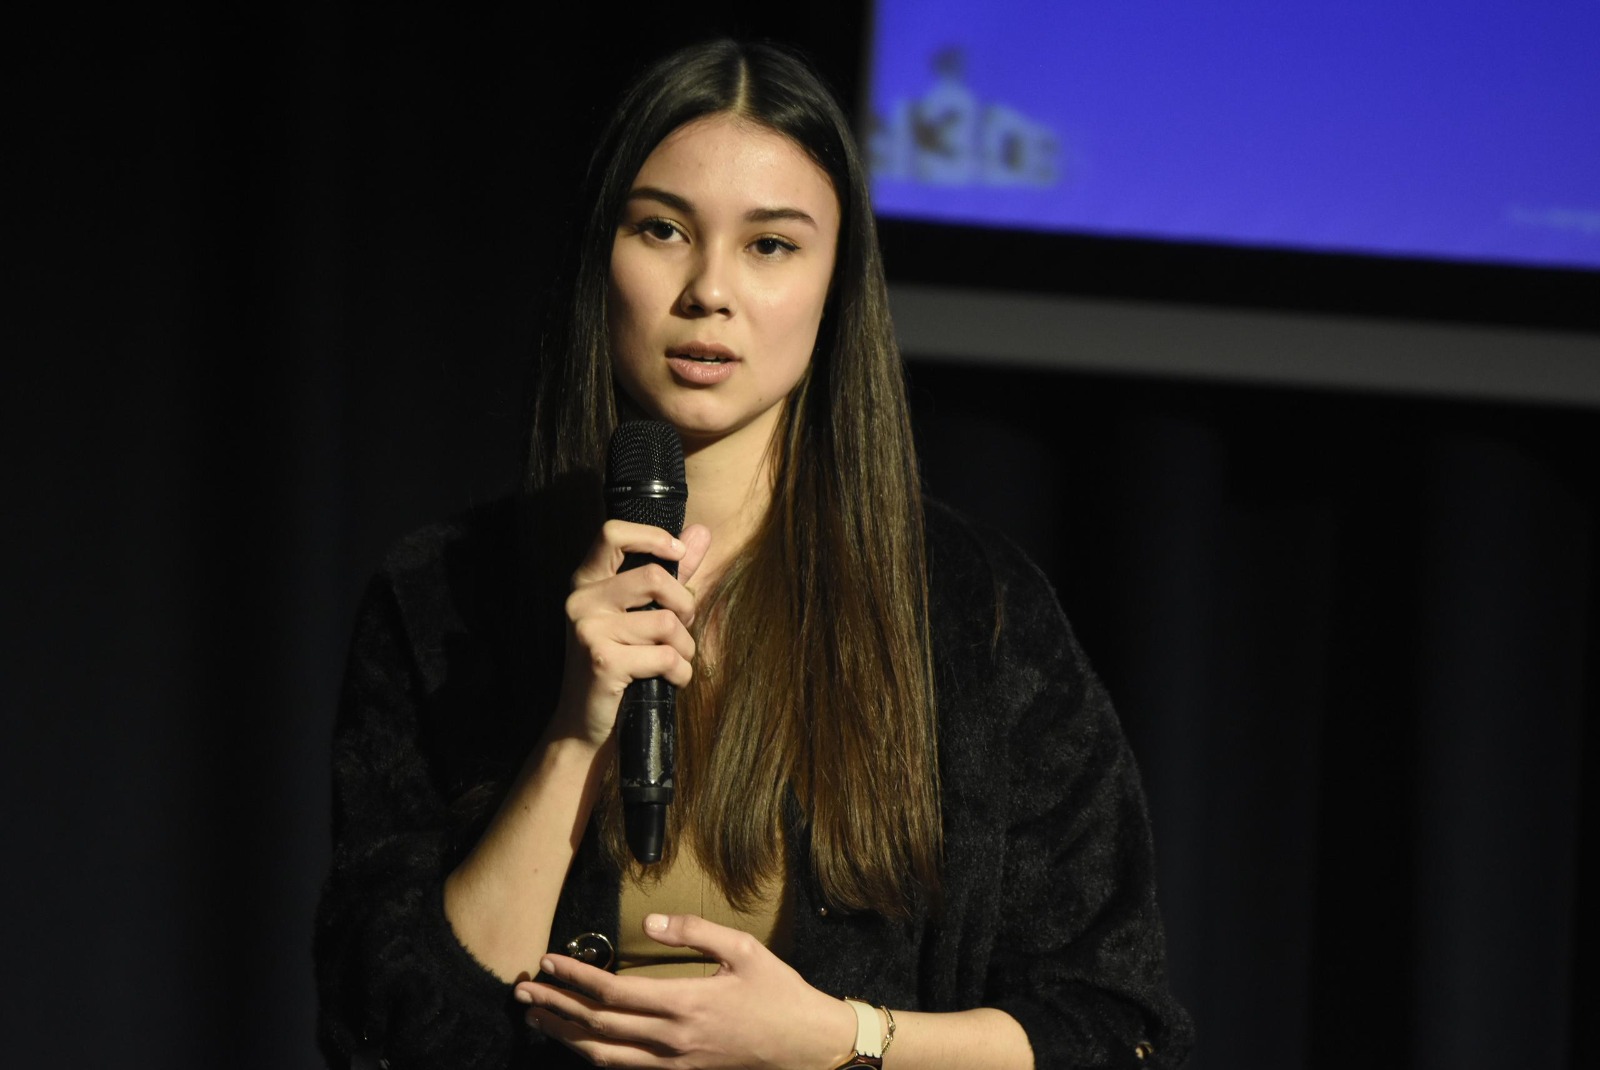 фото: 11 апреля в высшей школе журналистики и медиакоммуникаций Казанского университета прошла презентация молодежного сообщества ВЫЗОВ